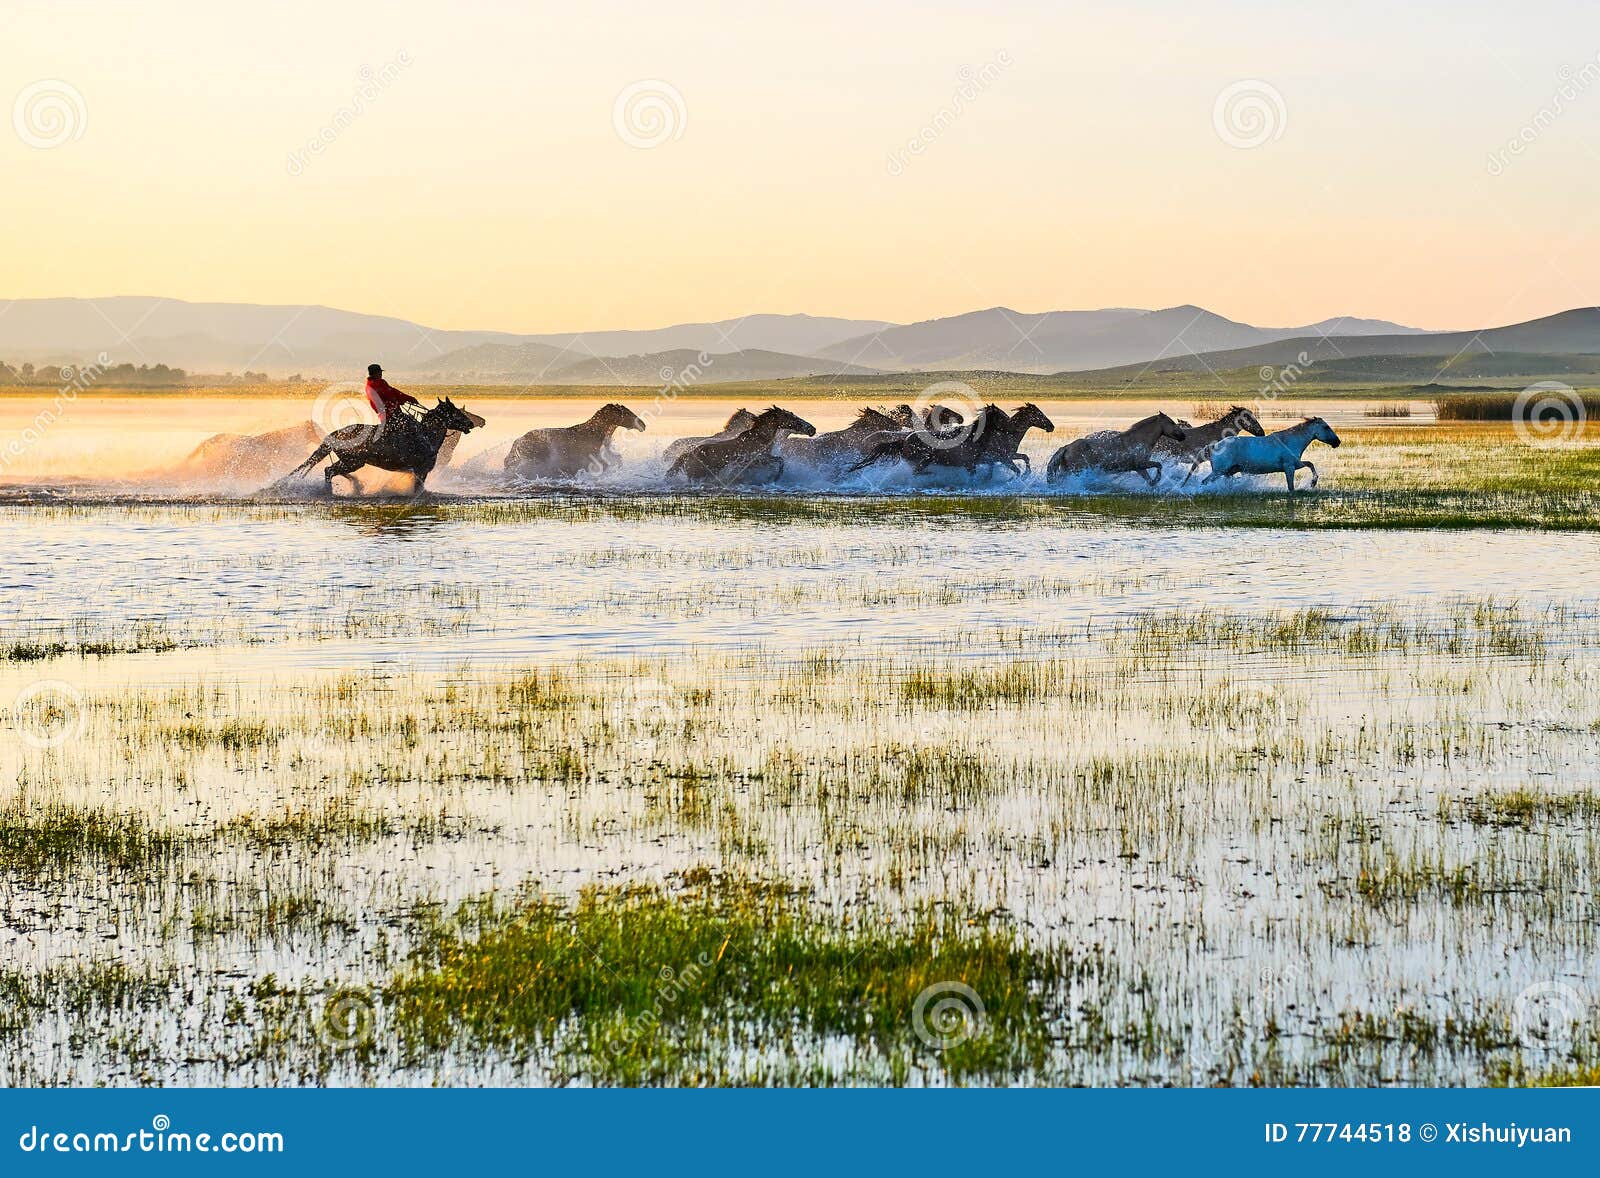 the running manada and herd